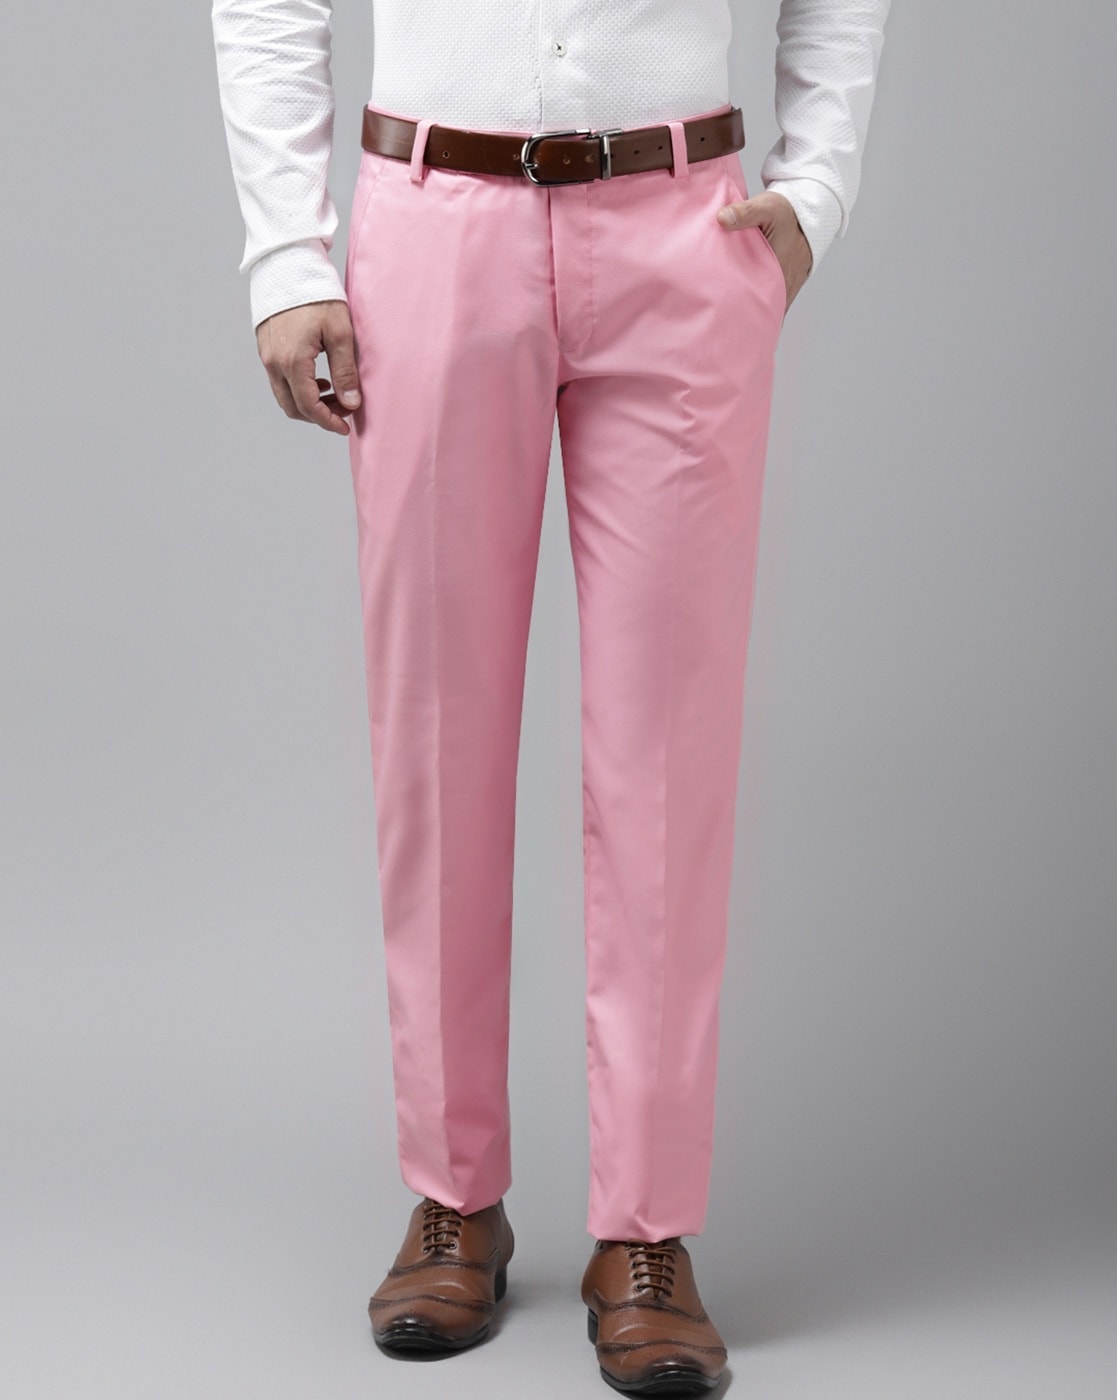 Pink Satin Full Length Trouser Pants  Order  Best Price